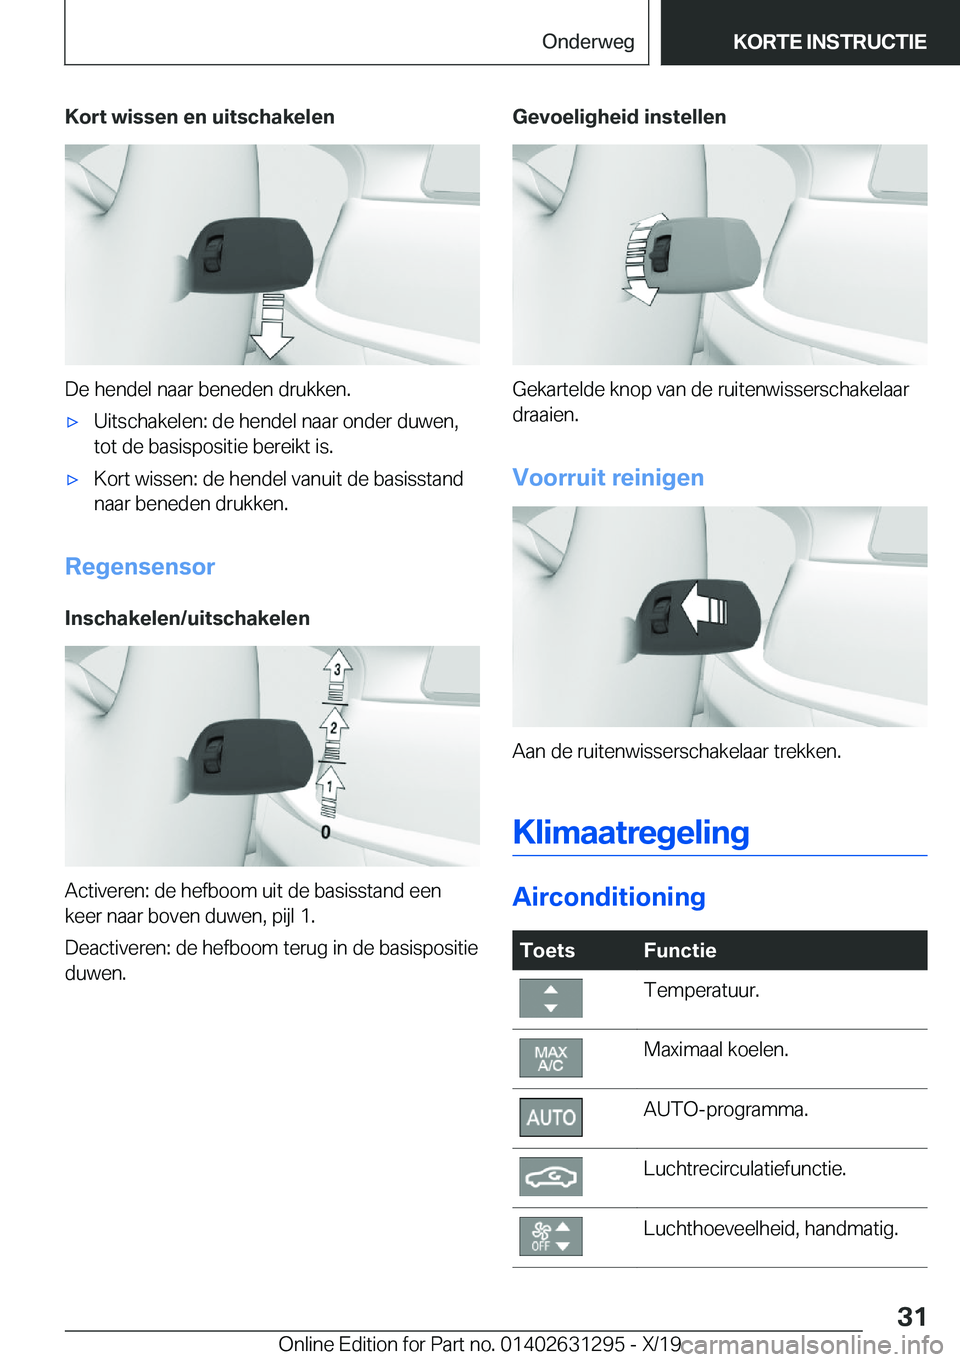 BMW M8 2020  Instructieboekjes (in Dutch) �K�o�r�t��w�i�s�s�e�n��e�n��u�i�t�s�c�h�a�k�e�l�e�n
�D�e��h�e�n�d�e�l��n�a�a�r��b�e�n�e�d�e�n��d�r�u�k�k�e�n�.
'x�U�i�t�s�c�h�a�k�e�l�e�n�:��d�e��h�e�n�d�e�l��n�a�a�r��o�n�d�e�r��d�u�w